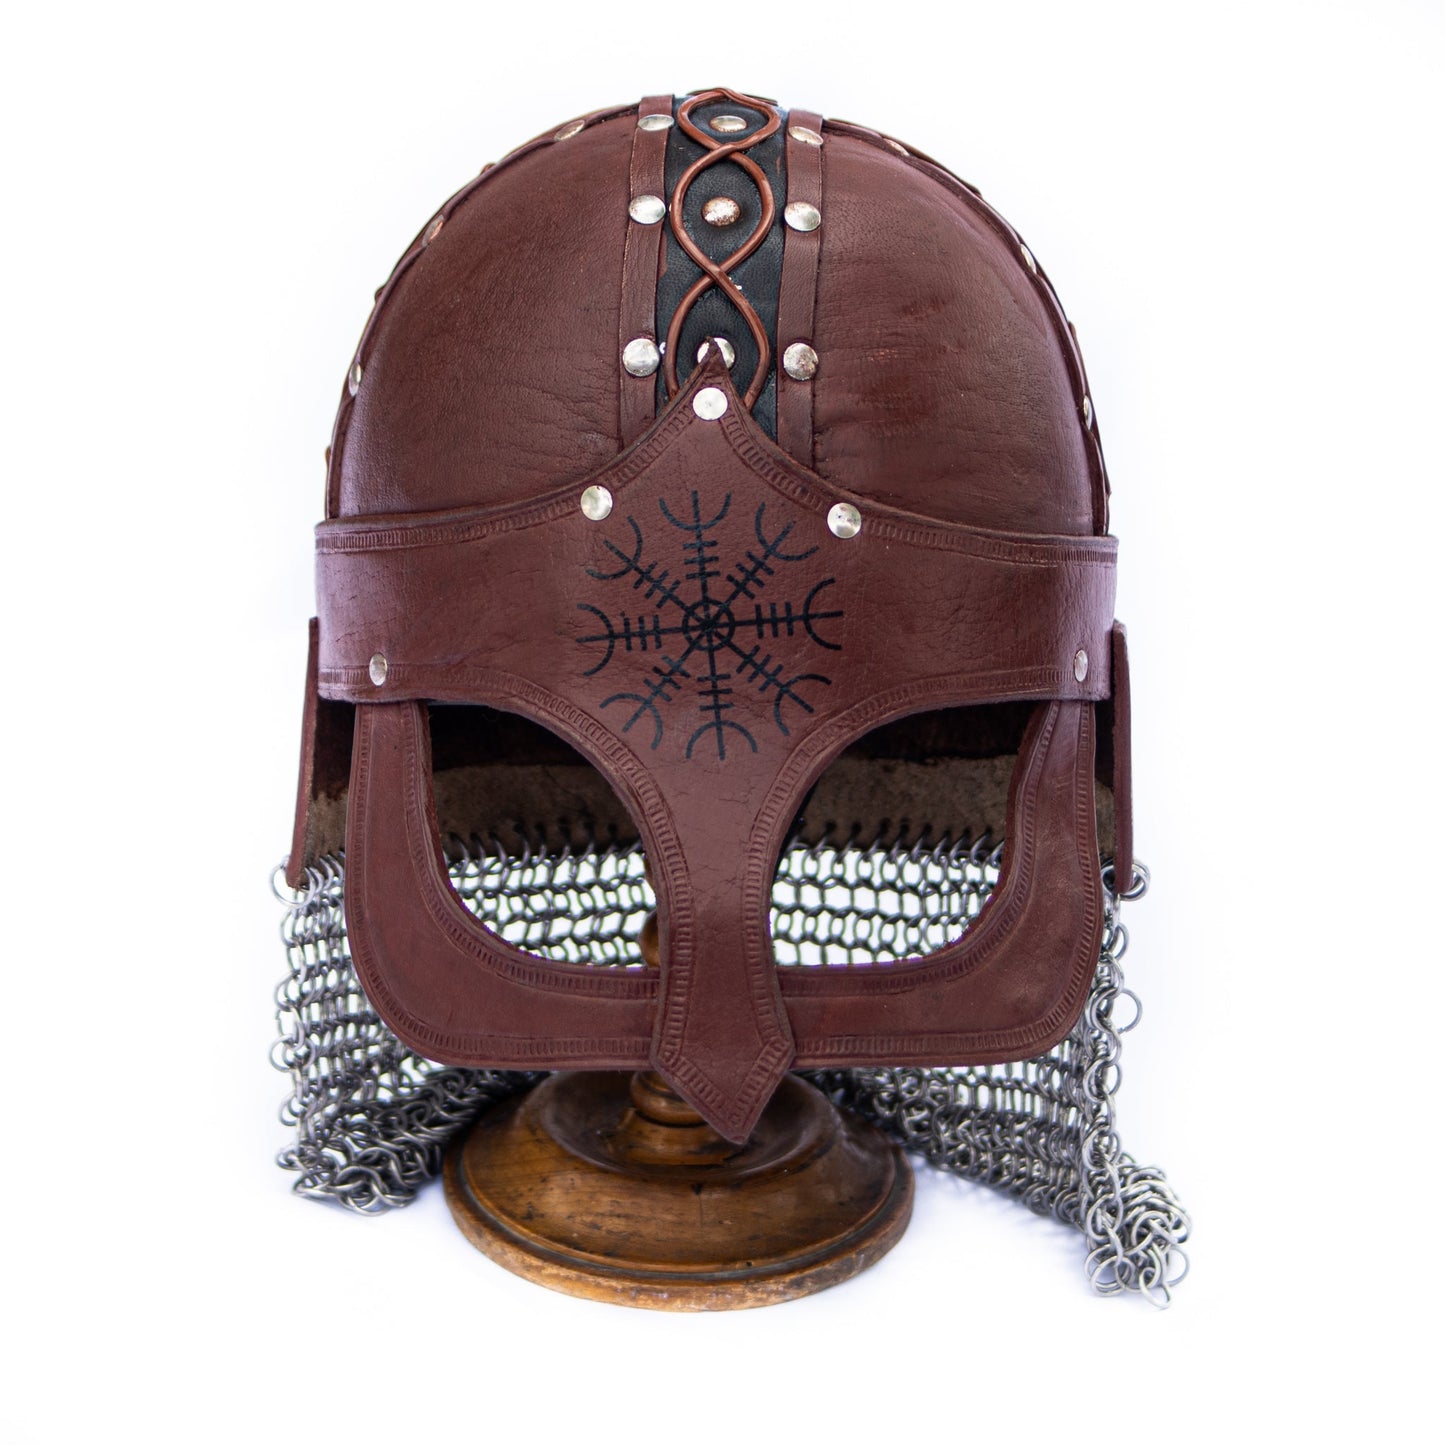 Gjermundbu Helmet - Viking Helmet